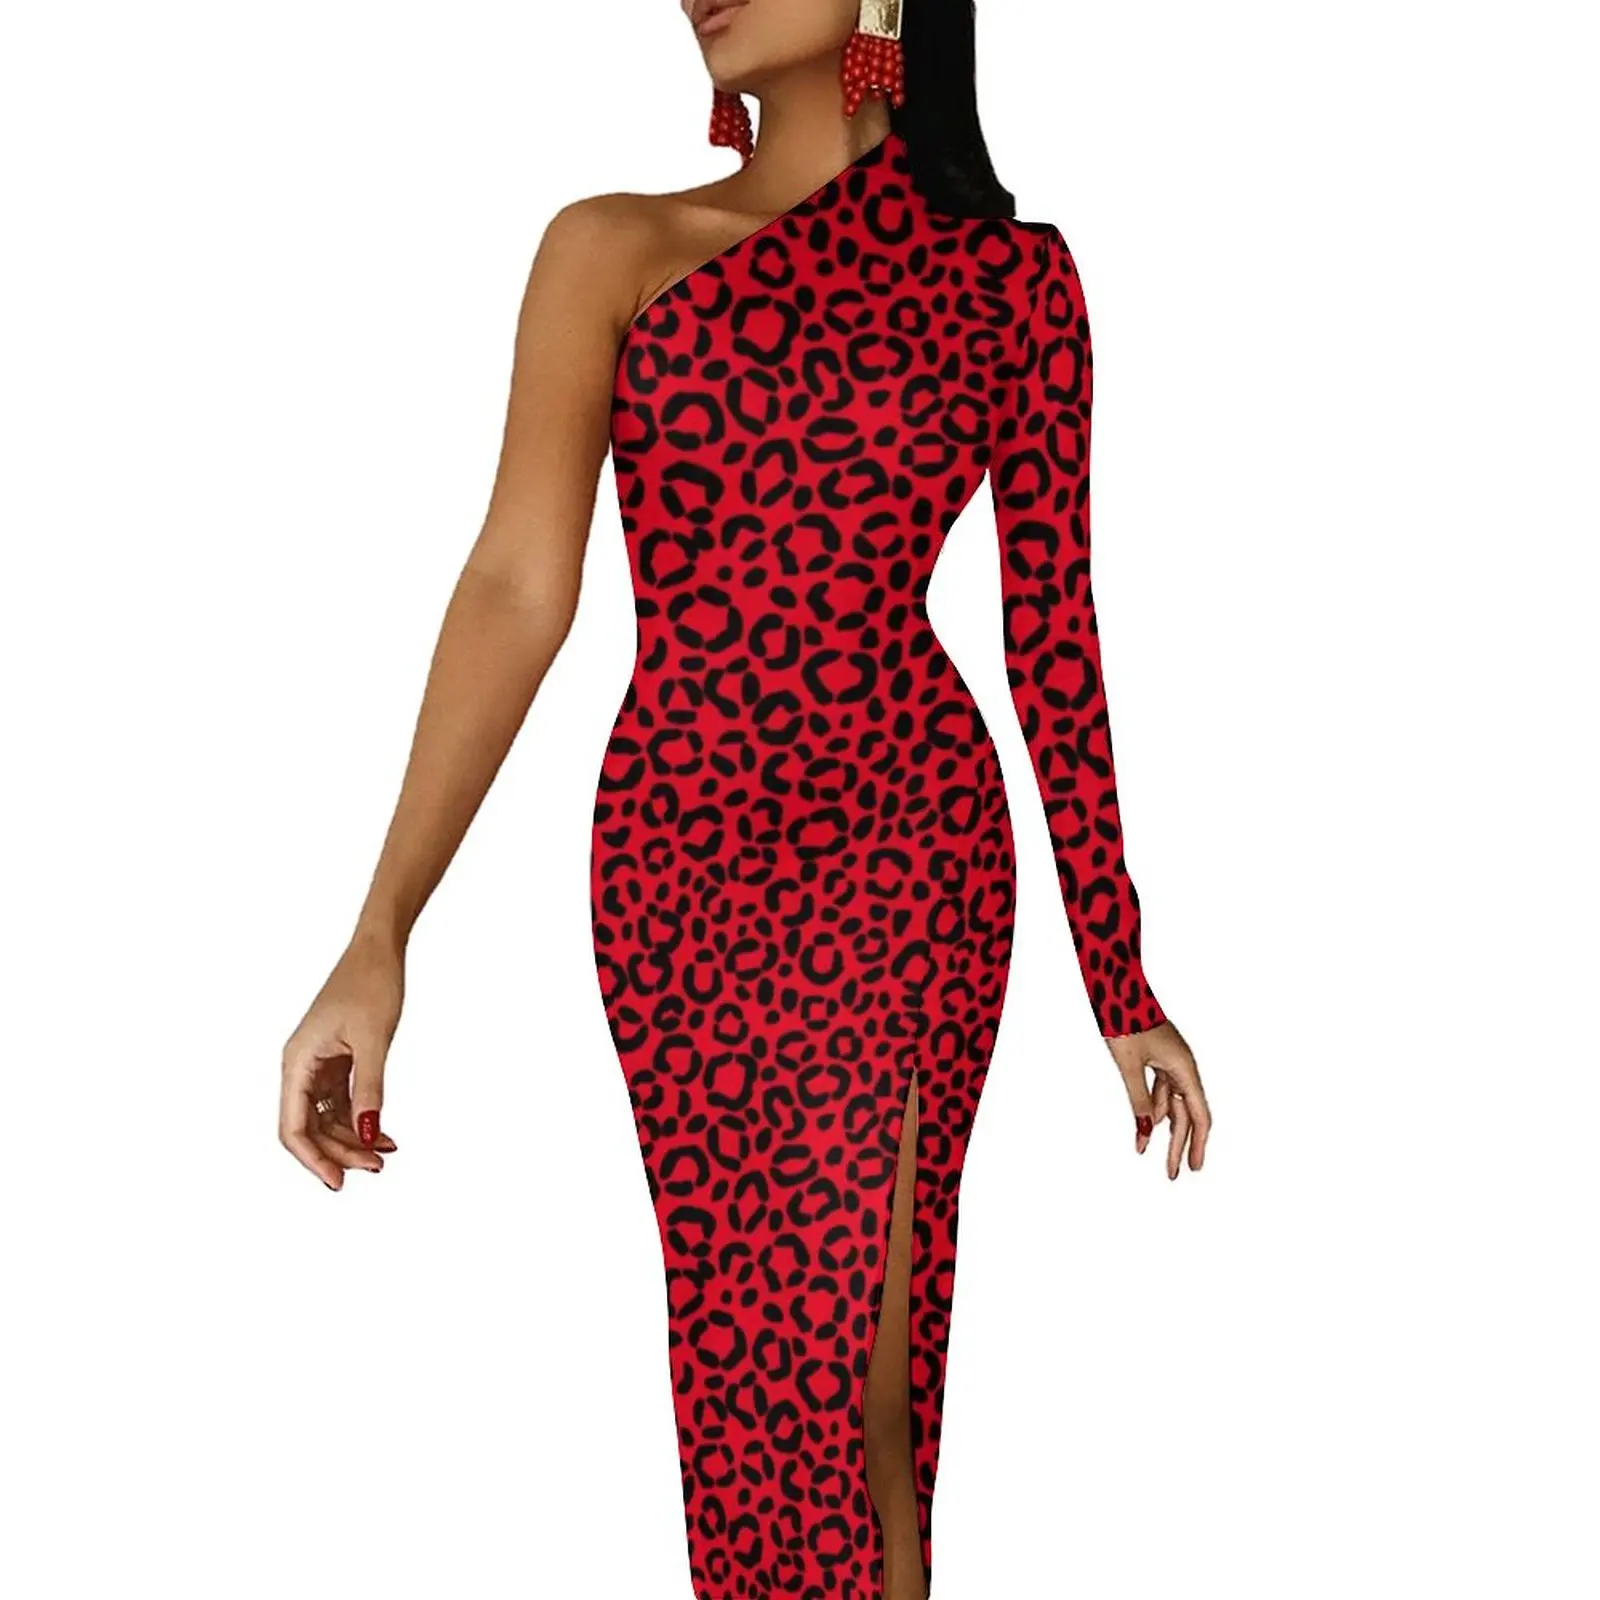 

Женское облегающее платье с леопардовым принтом, Красное и черное платье макси с меховым принтом, дизайнерское платье на одно плечо, подарок на день рождения